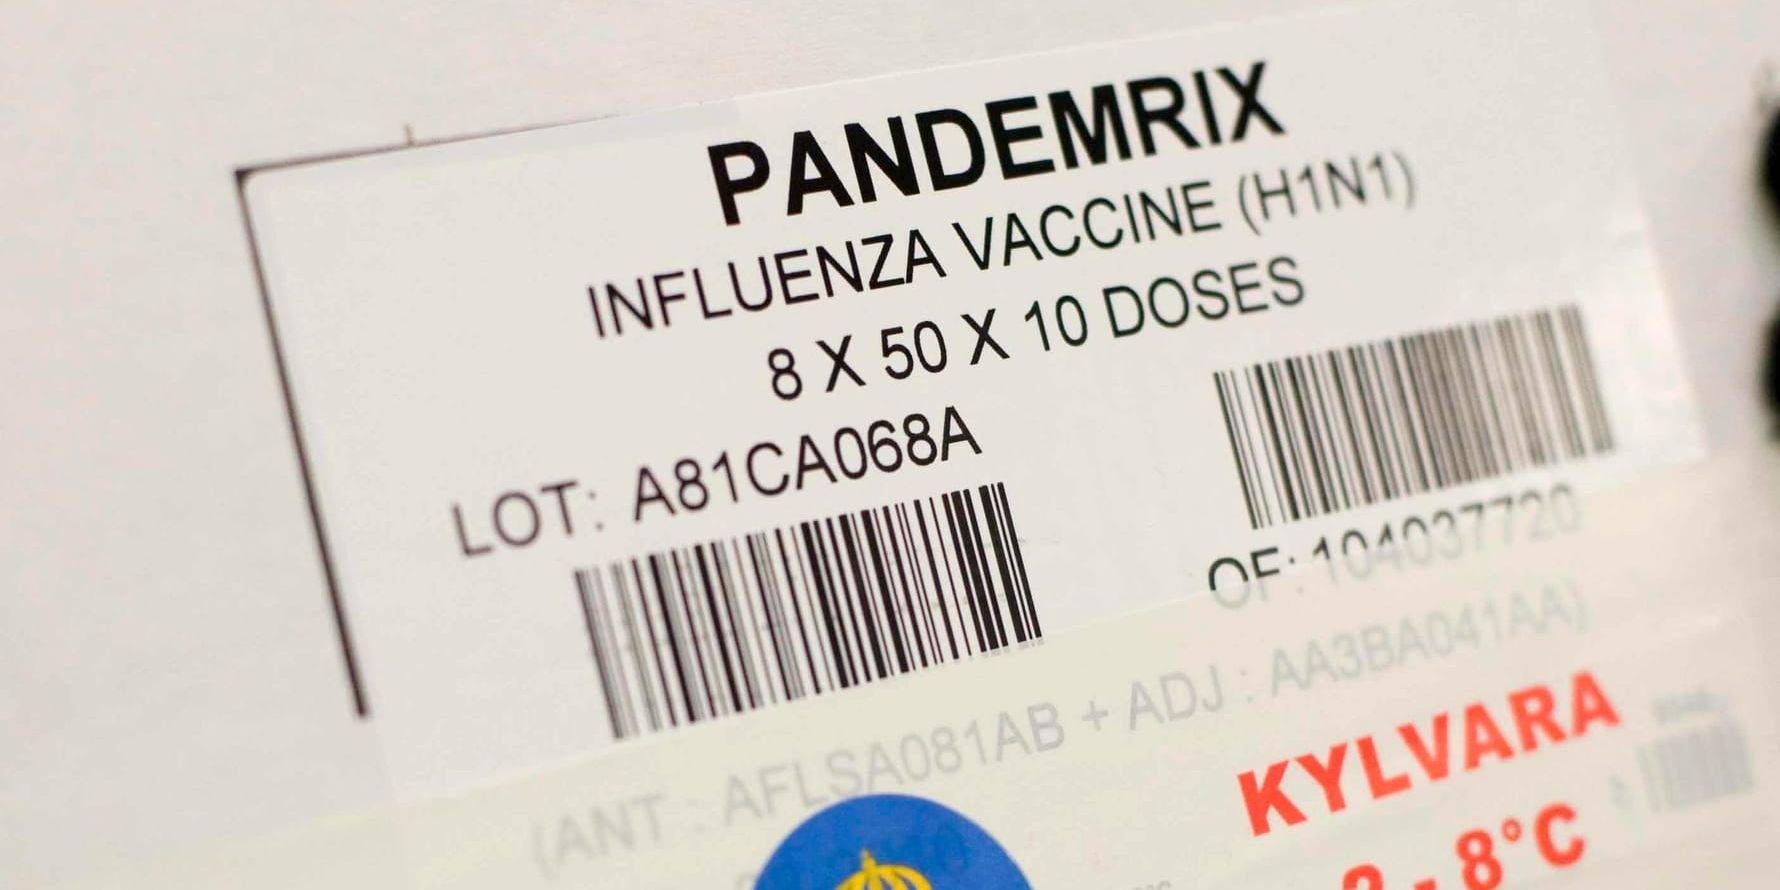 Det vaccin som användes var ett så kallat prototypcvaccin vid namn Pandemrix, tillverkat av läkemedelsföretaget Glaxosmithkline (GSK).